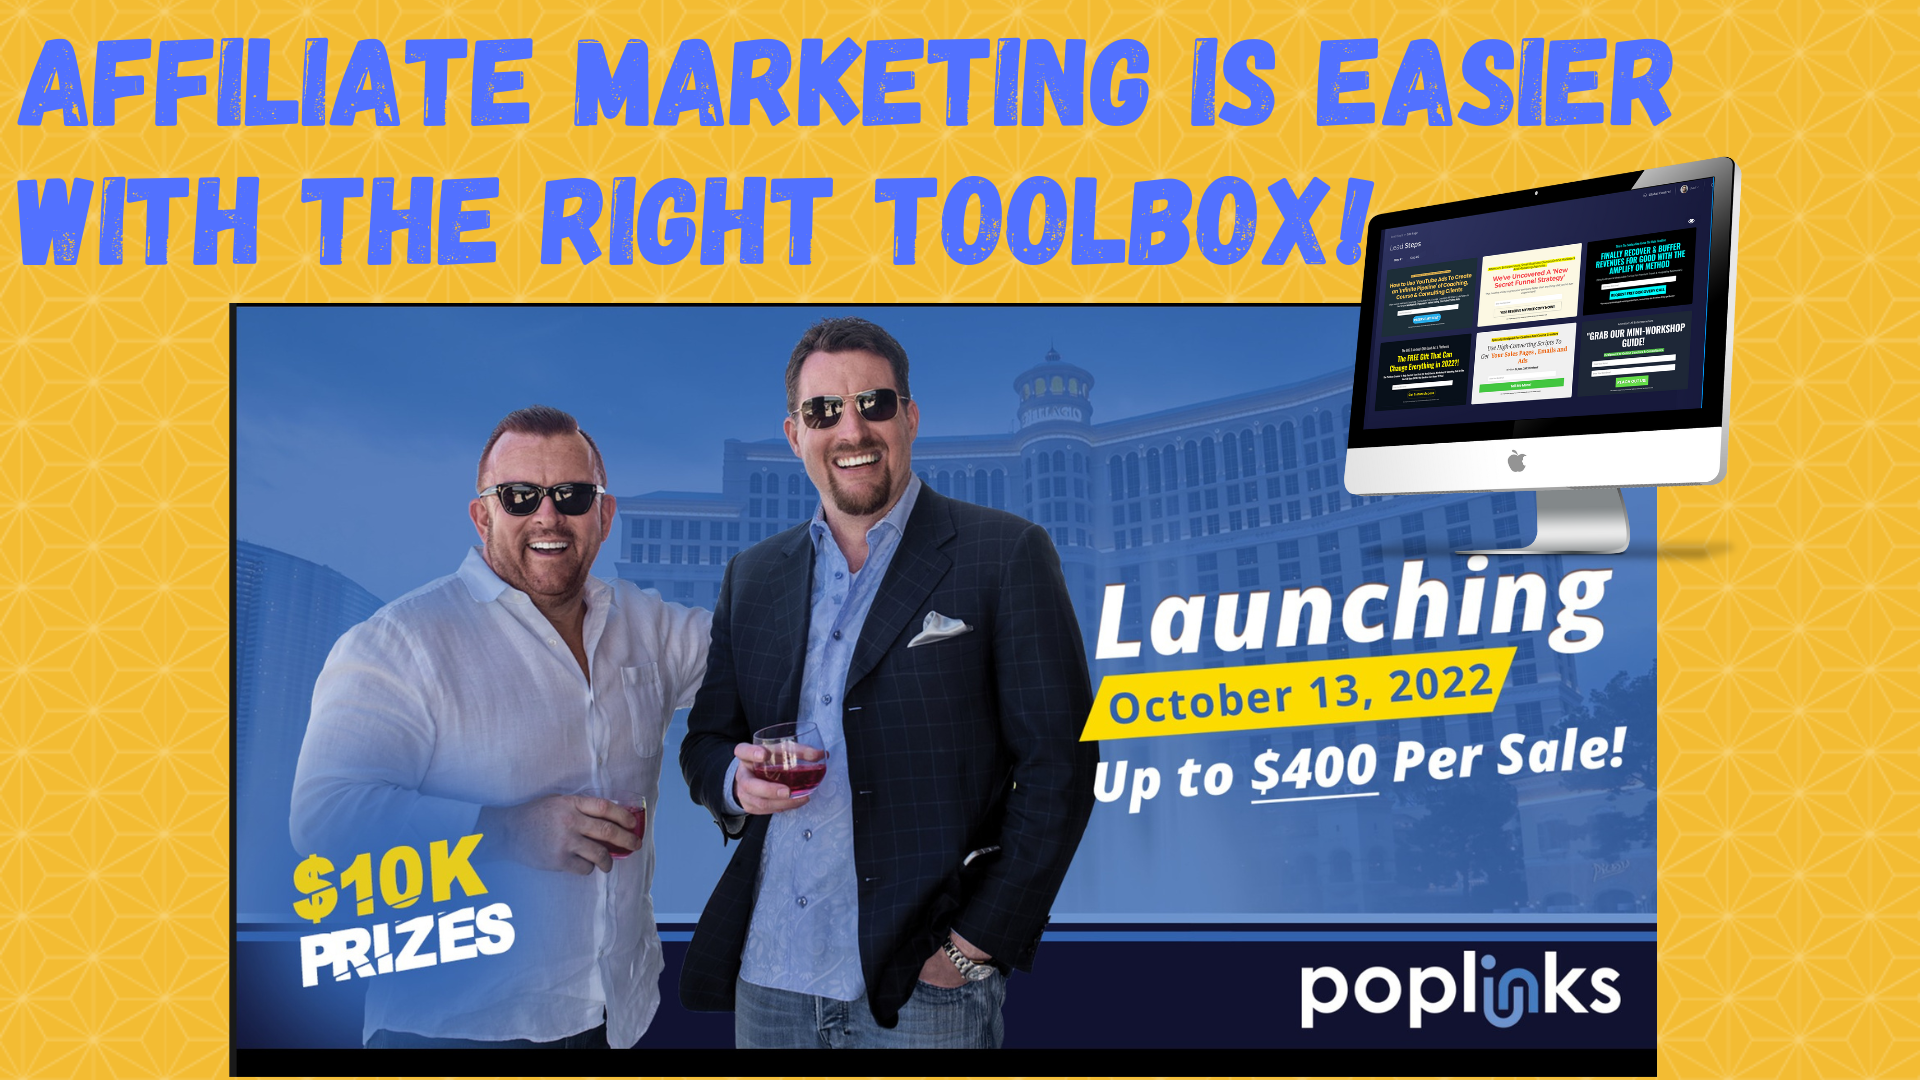 PopLInks Step by Step Demo - The best way to promote PopLinks is using PopLinks everyday